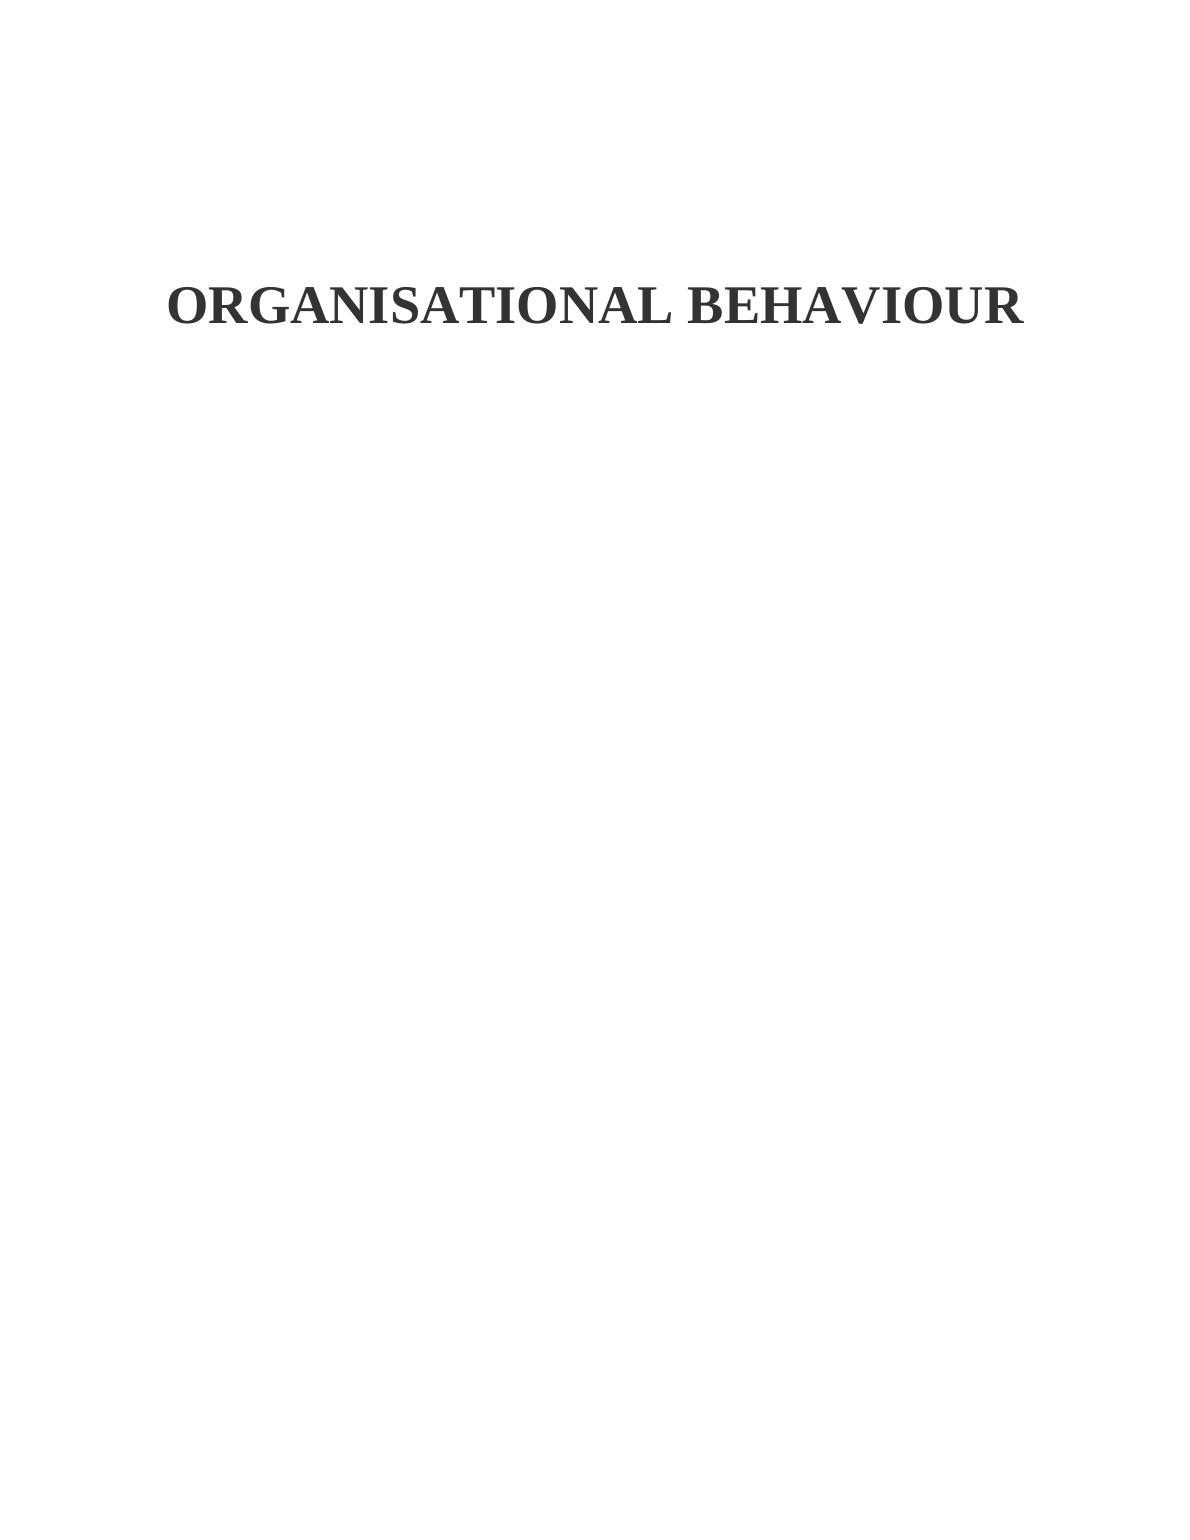 Organizational Behaviour : Assignment_1